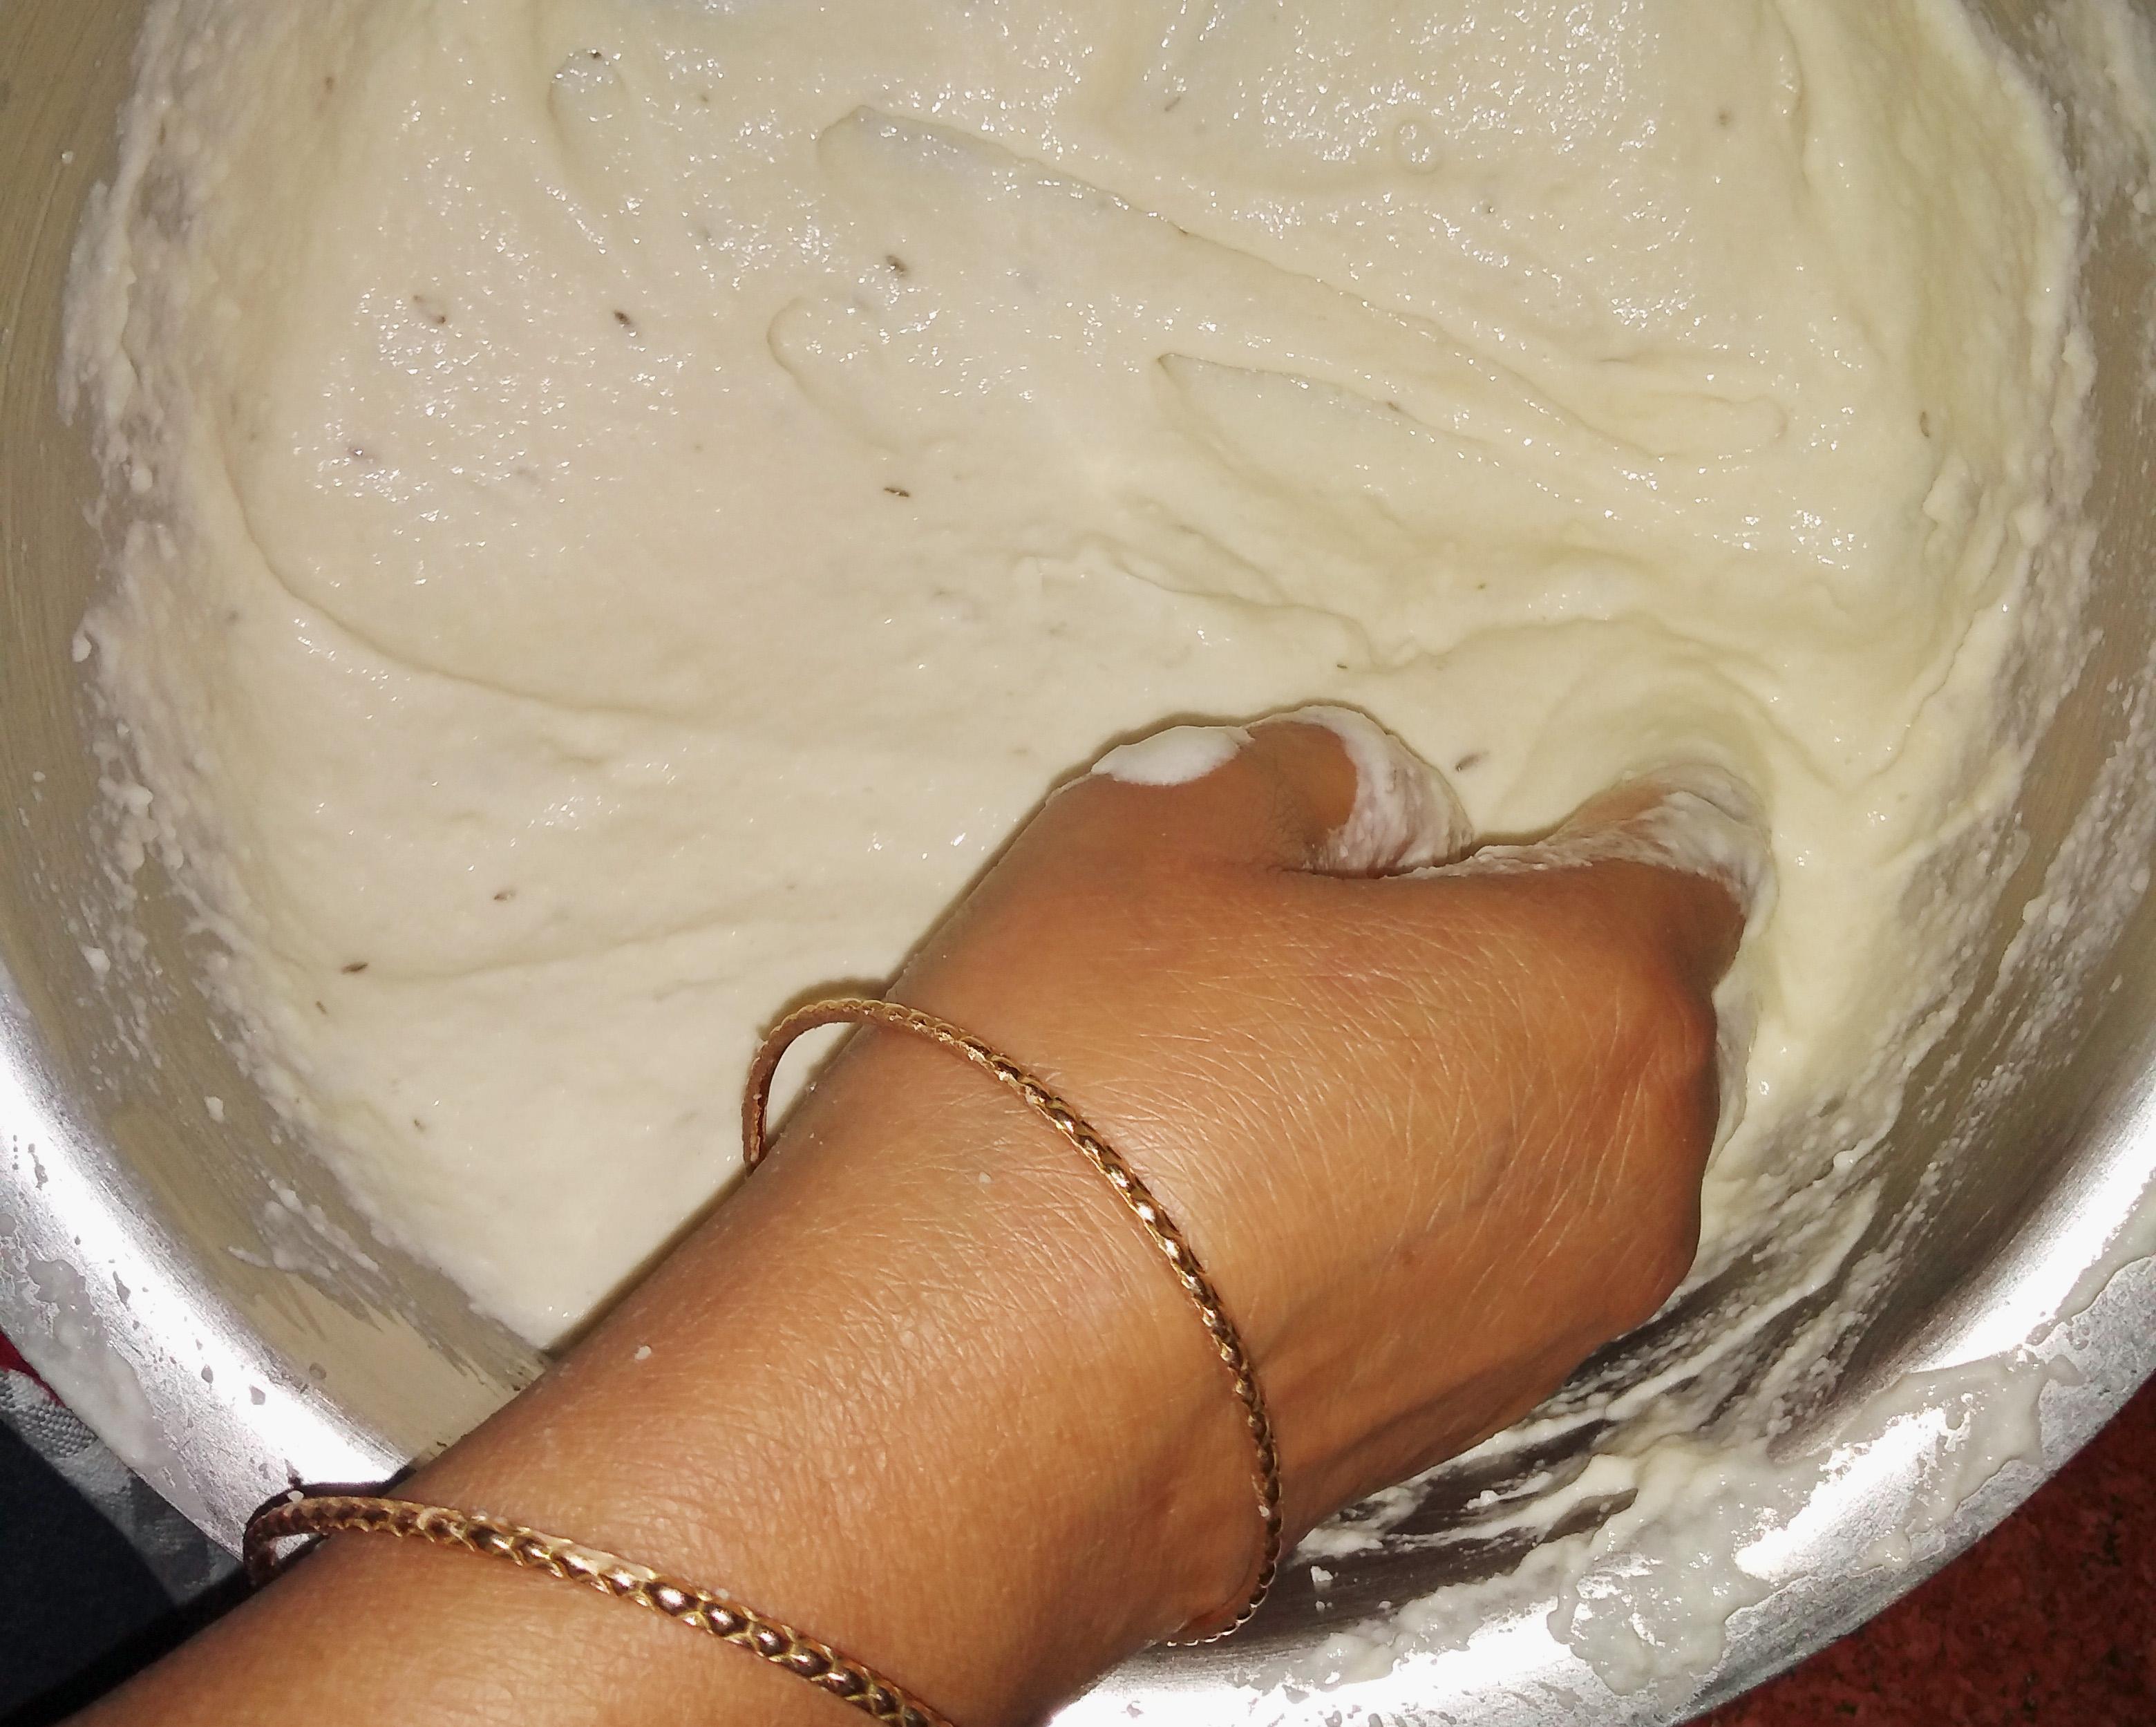 Dahi Pakories, Urad & Mung Dal Dumplings in Yoghurt Sauce